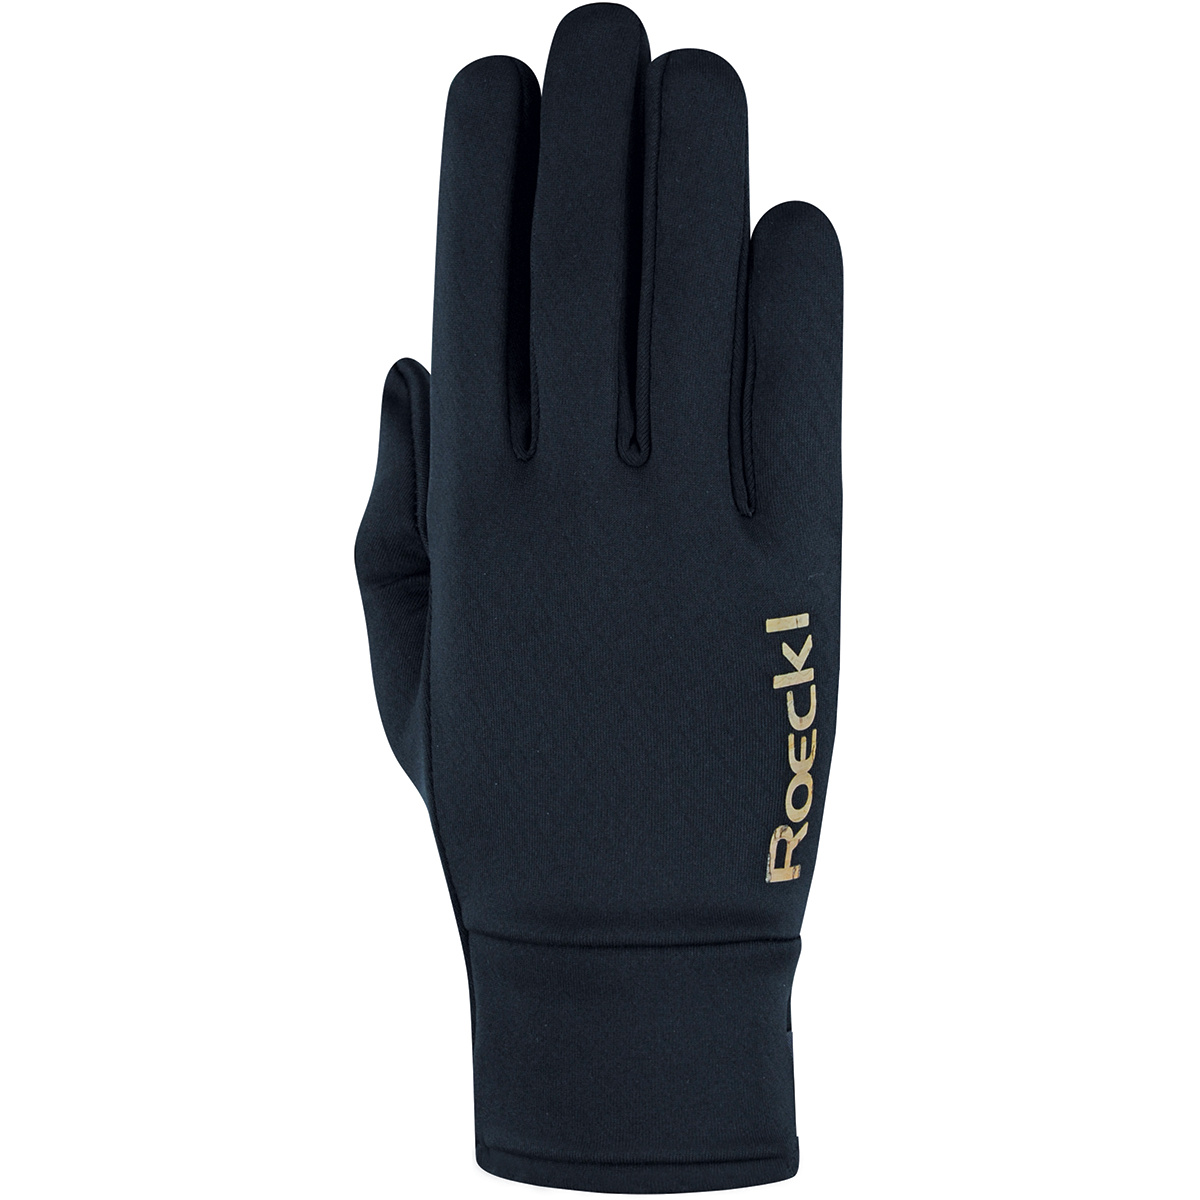 Roeckl Kamui Handschuhe (Größe 10, schwarz)